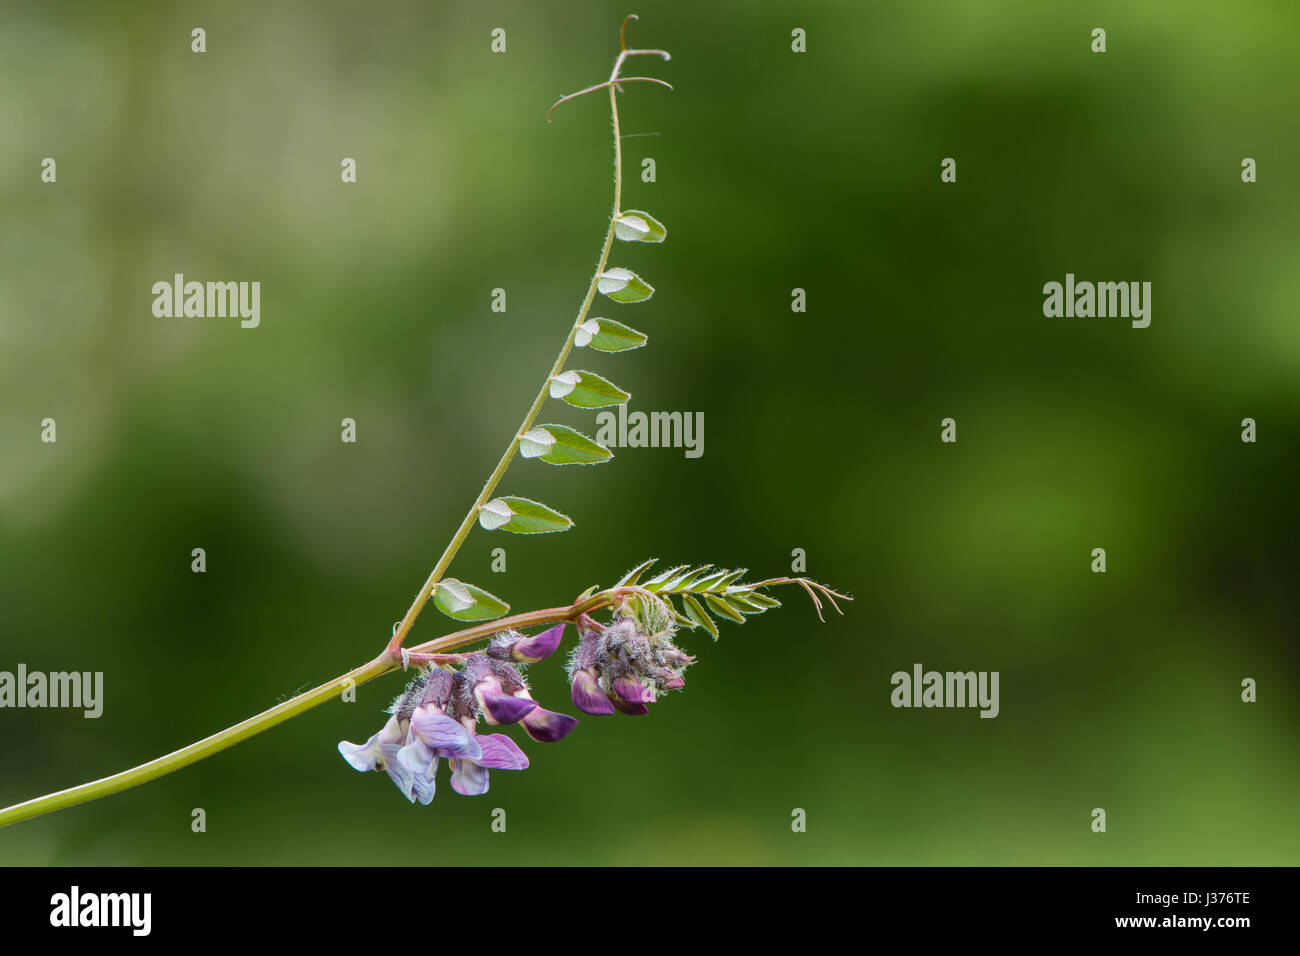 La vesce (Vicia sepium Bush) plante en fleur. Un membre de la pourpre famille des pois (Fabaceae), montrant des fleurs, des dépliants et de vrilles Banque D'Images